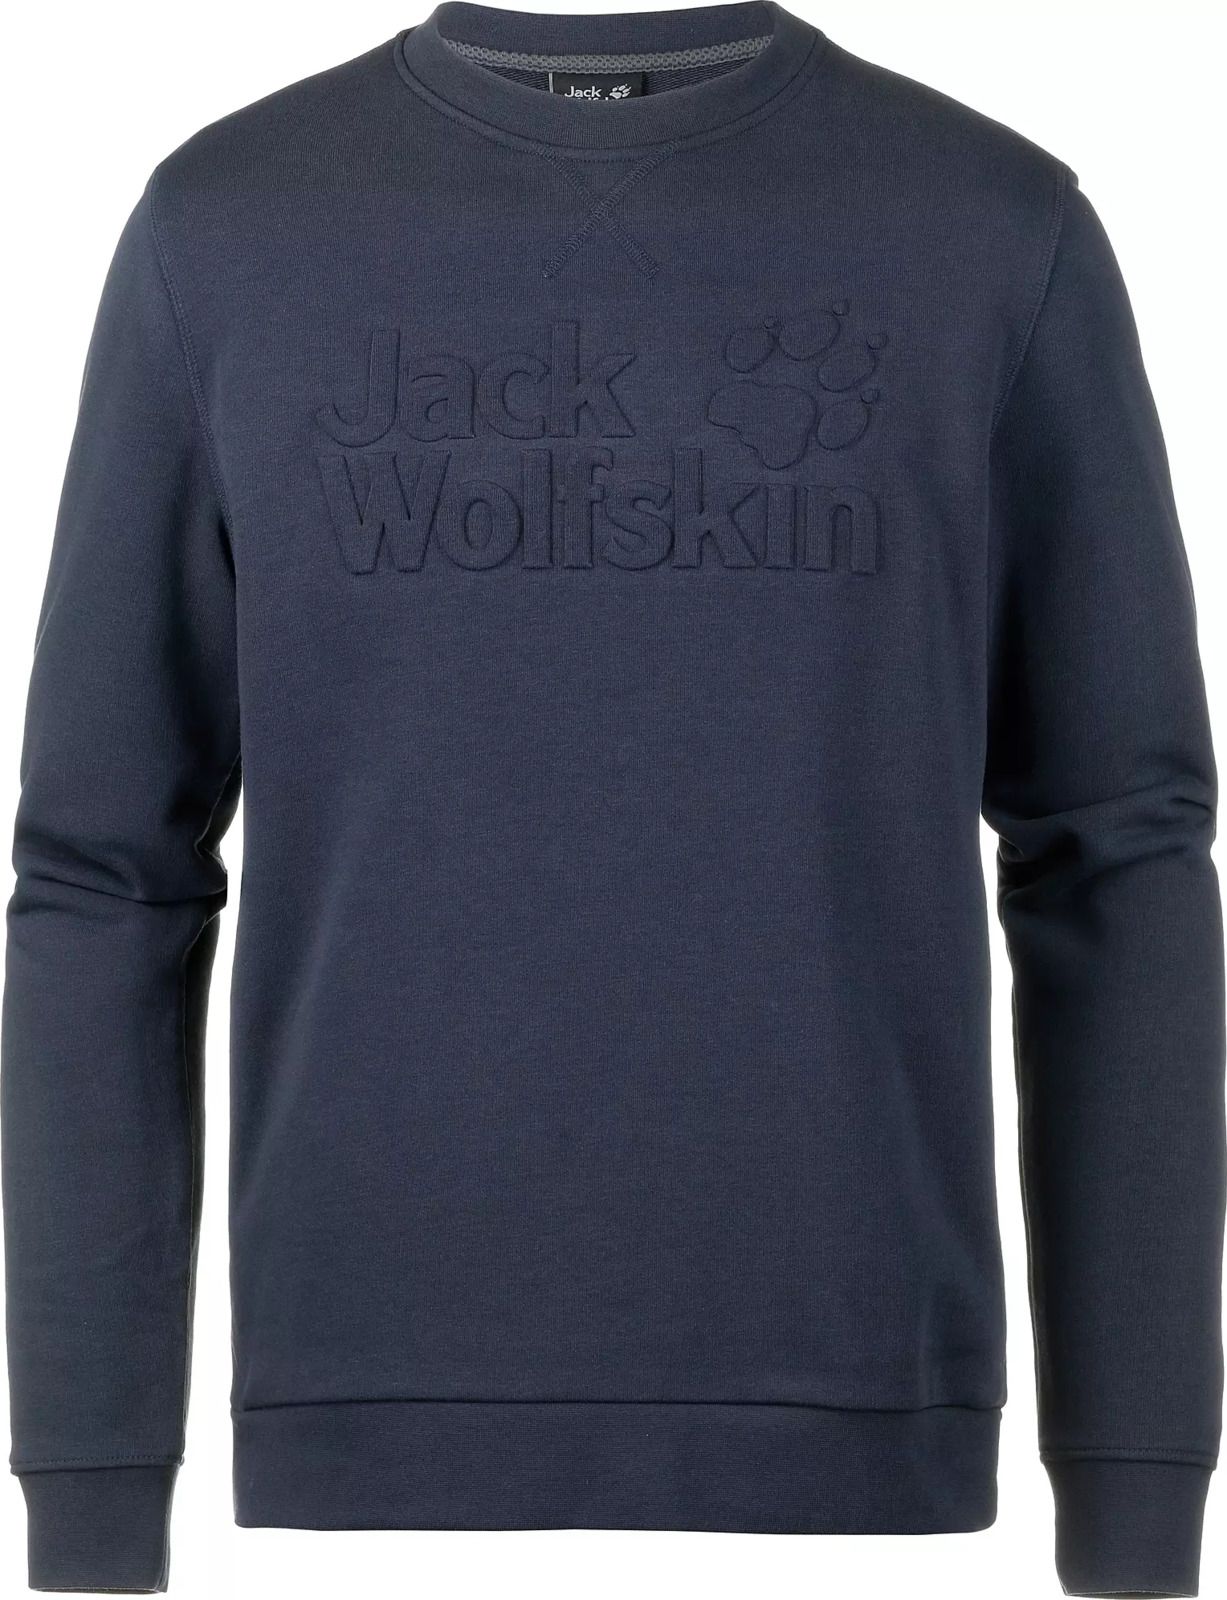   Jack Wolfskin Logo Sweatshirt M, : -. 5018891-1010.  S (42/44)